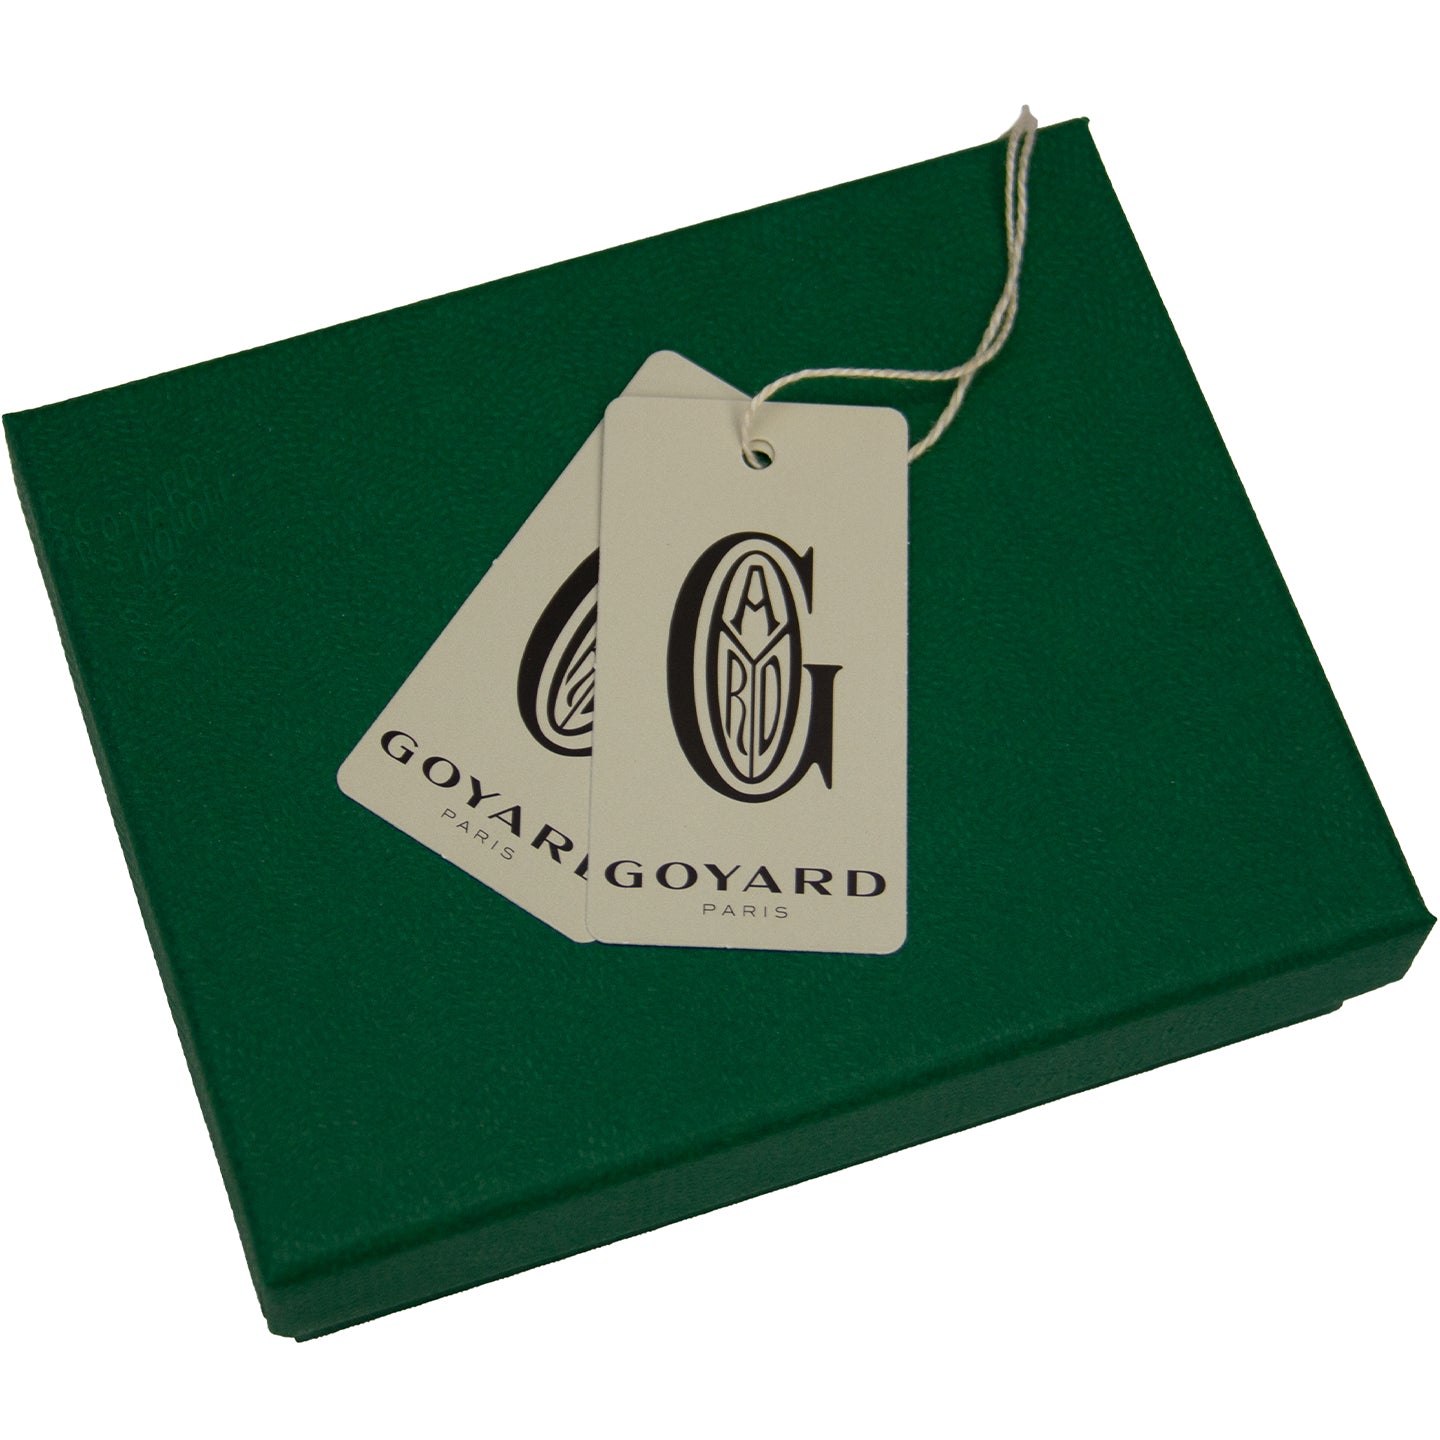 Goyard Card Holder  Goyard card holder, Card holder, Goyard